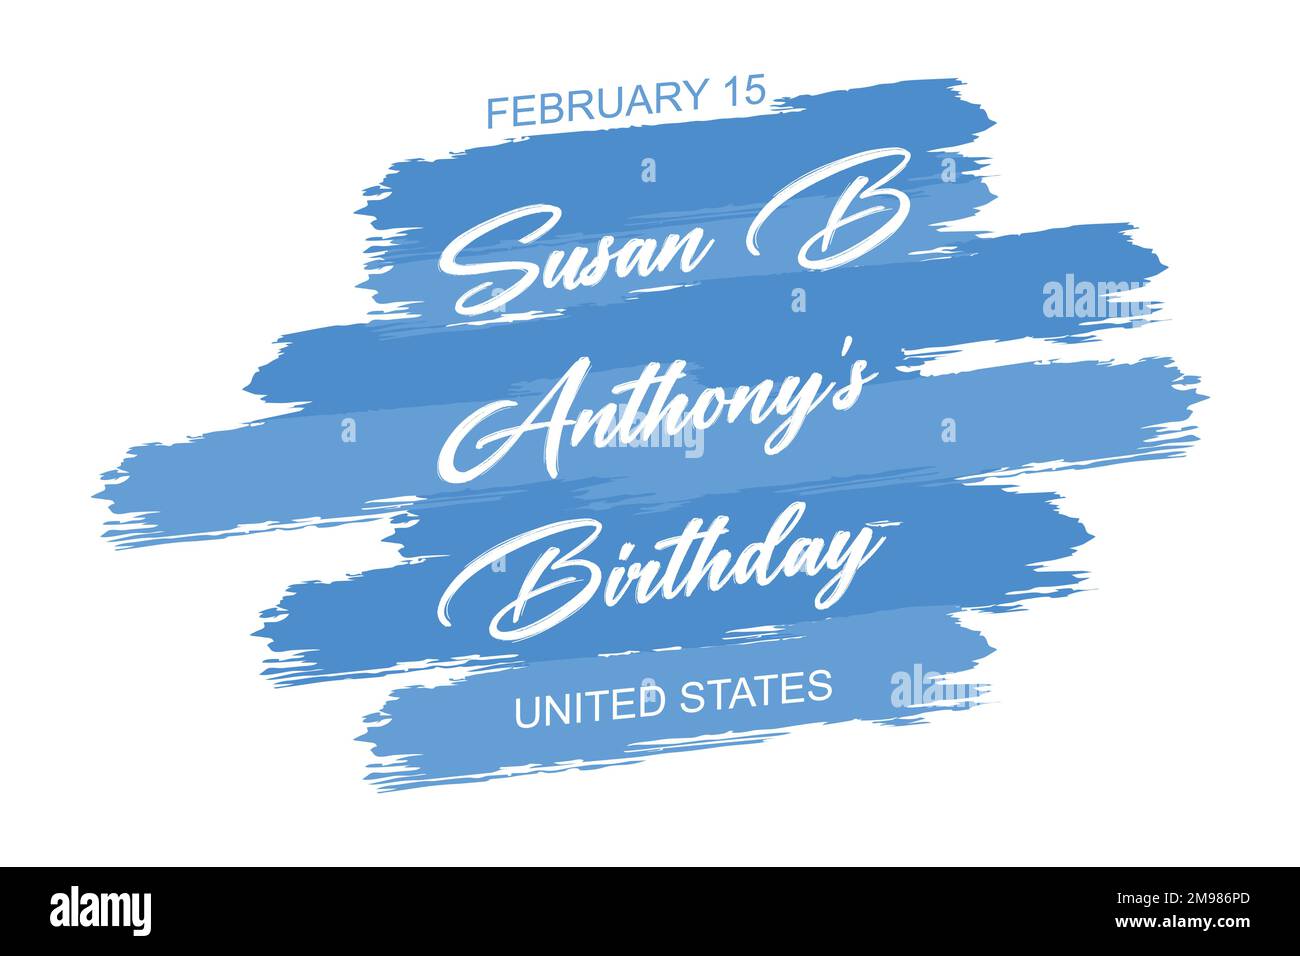 febbraio 15 - compleanno di Susan B Anthony - Stati Uniti, scritta a mano testo di iscrizione per il design delle vacanze invernali, disegno vettoriale piatto moderno Illustrazione Vettoriale